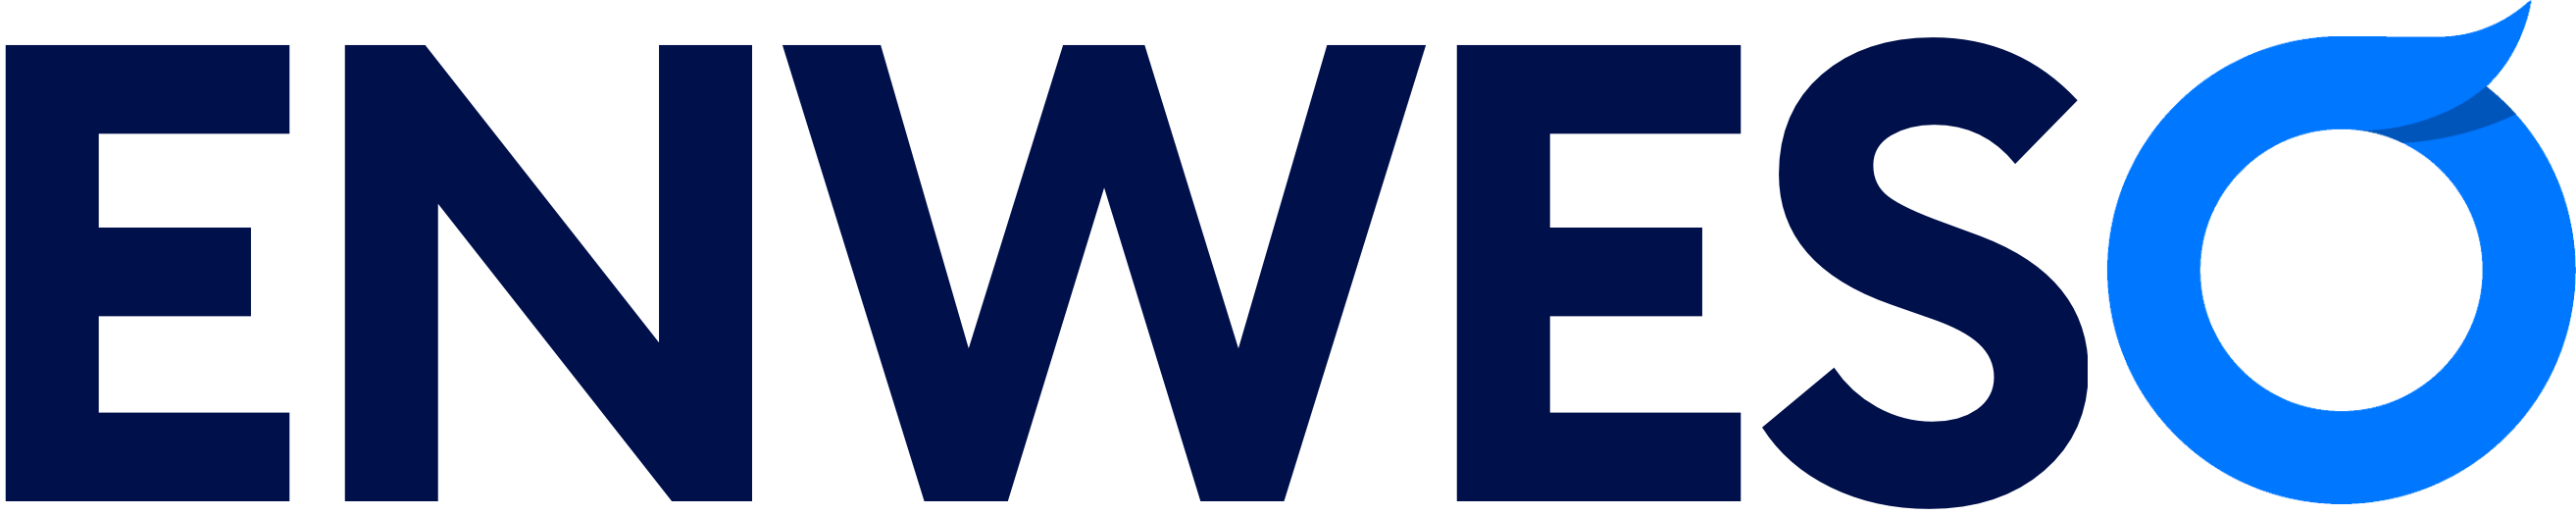 Homepage Eins Webdesign Logo